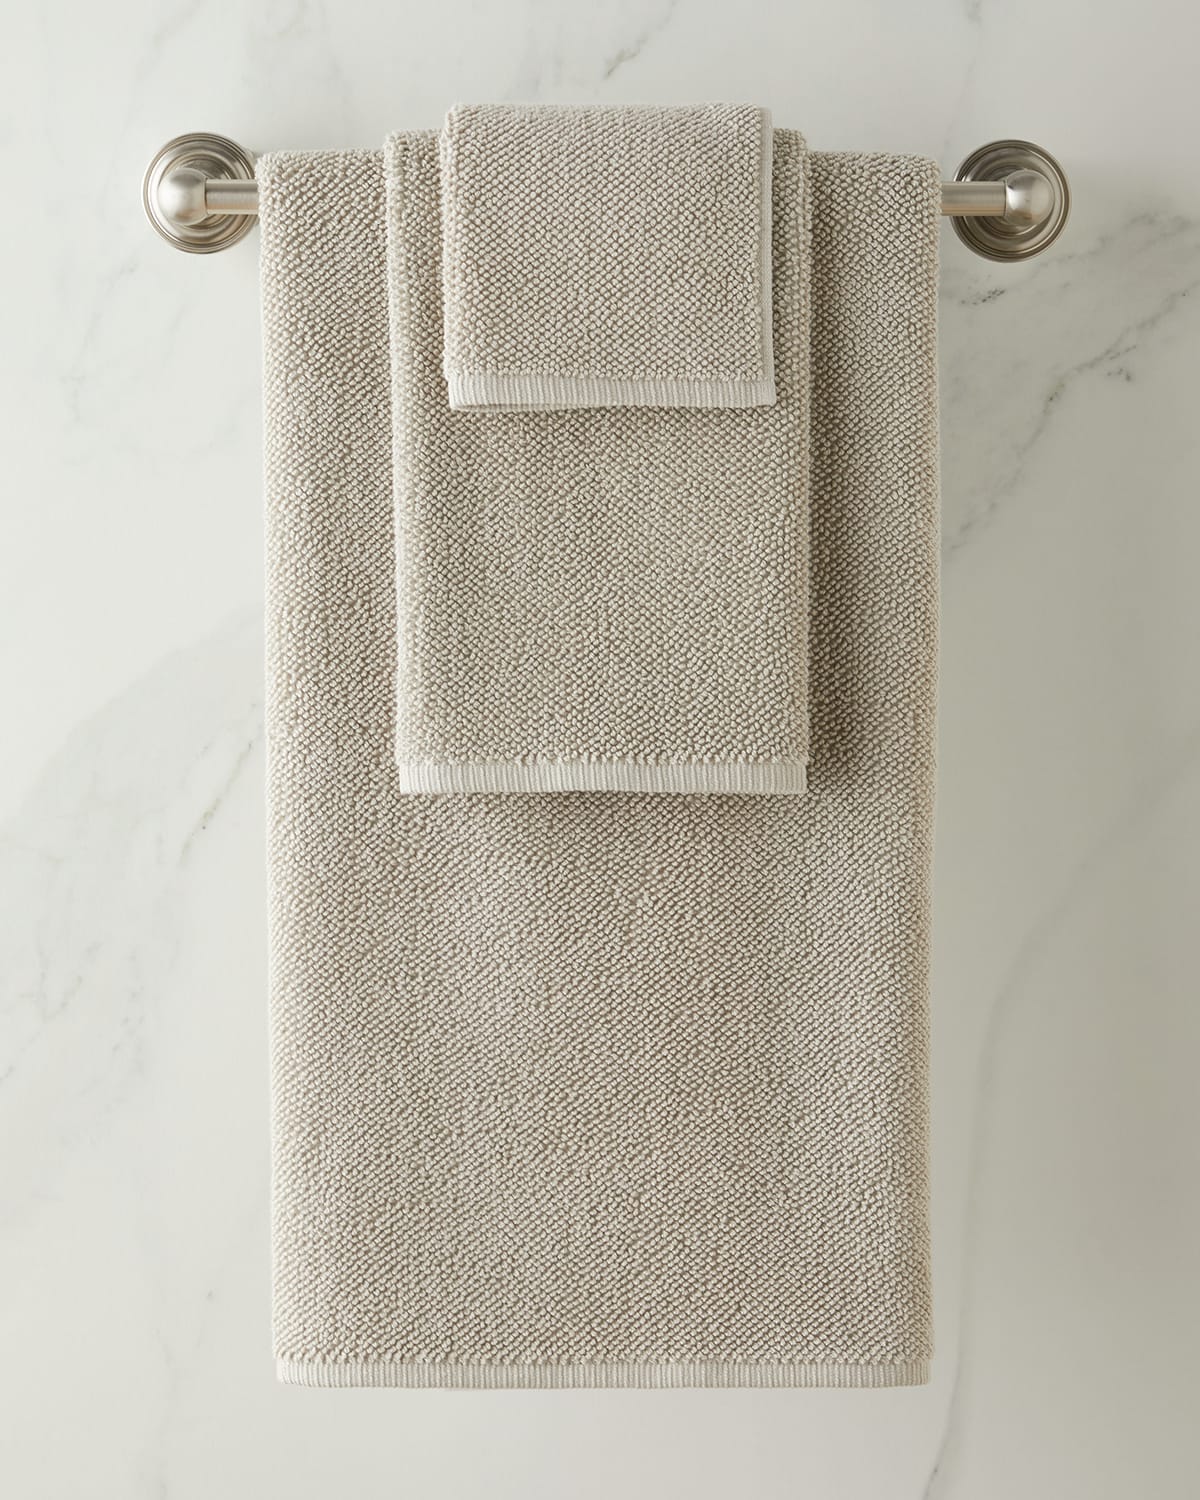 Kassatex Veneto Wash Towel In Gray